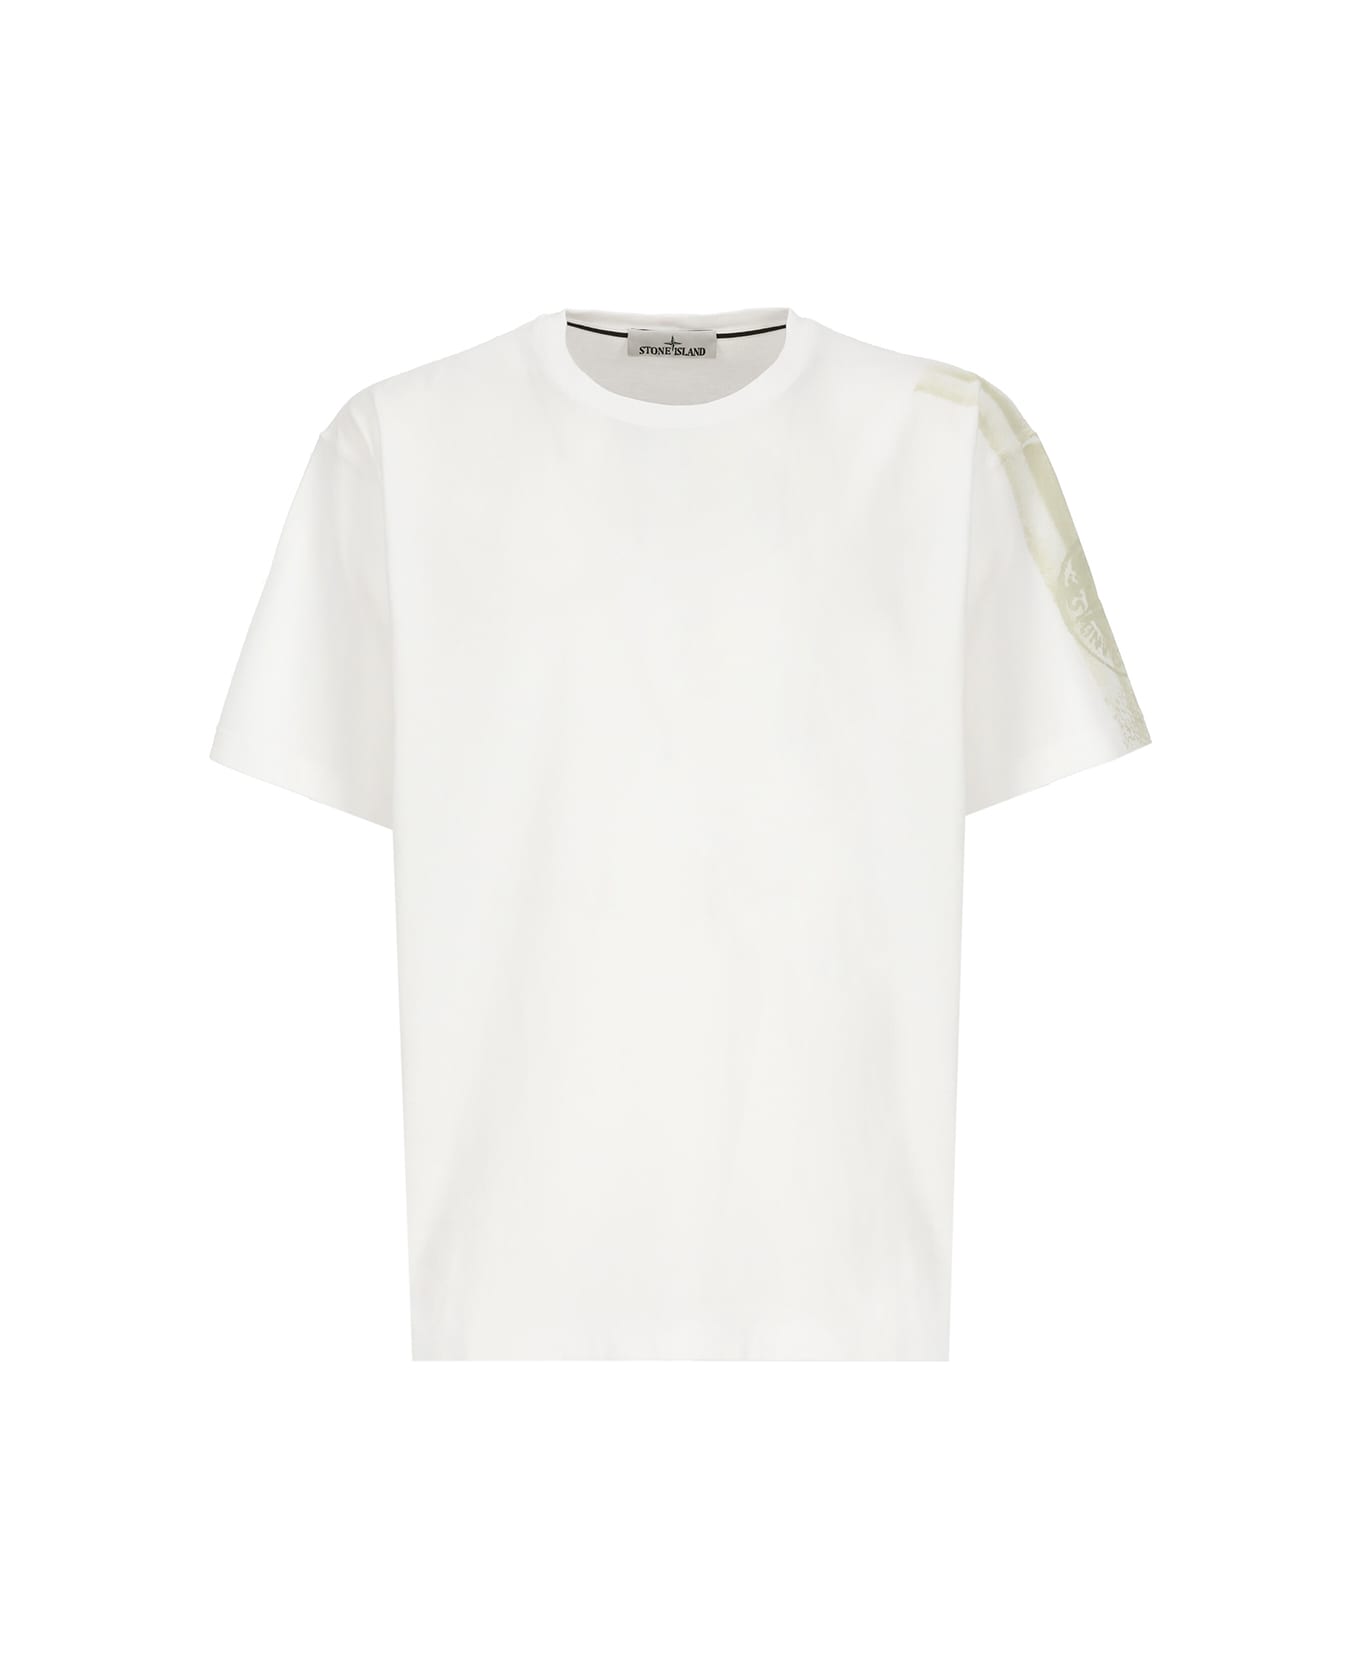 Stone Island Cotton T-shirt - White シャツ